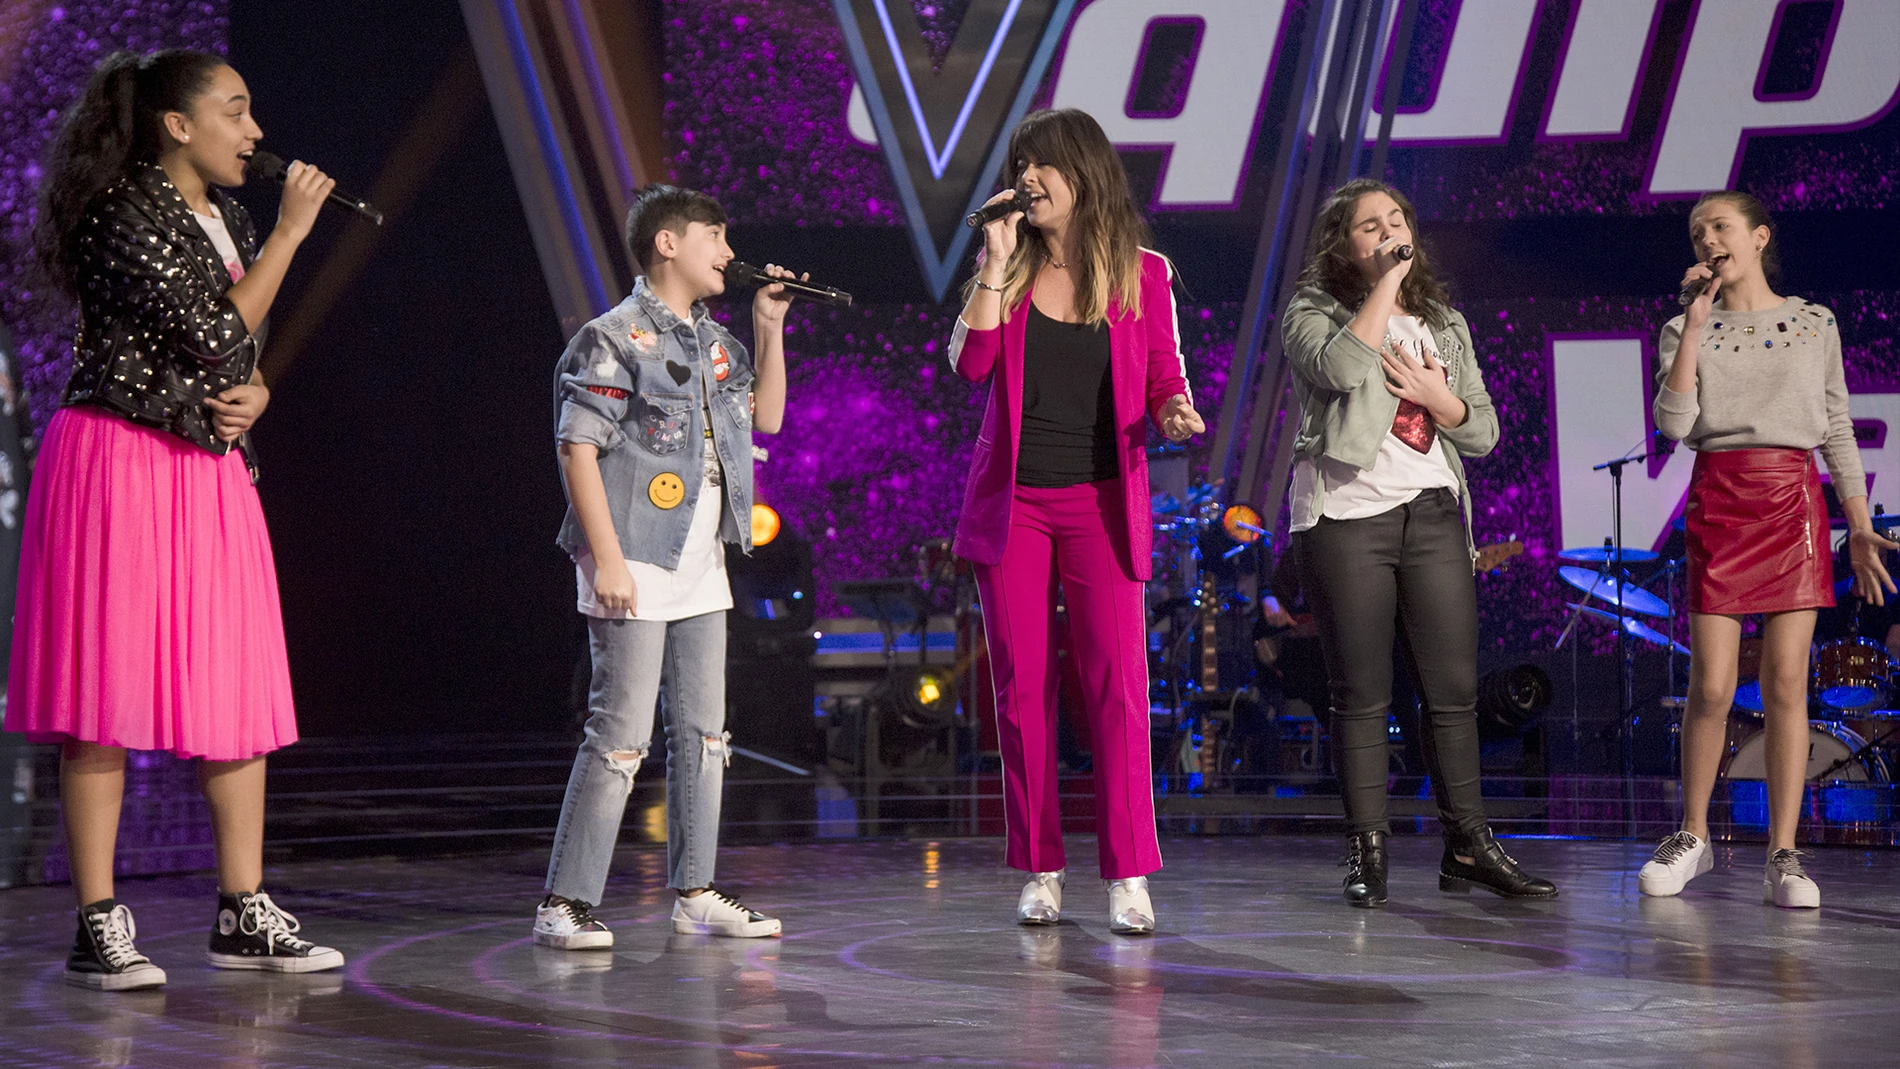 La emotiva actuación de Vanesa Martín con sus semifinalistas en ‘La Voz Kids’ interpretando ‘Hablarán de ti y de mi’